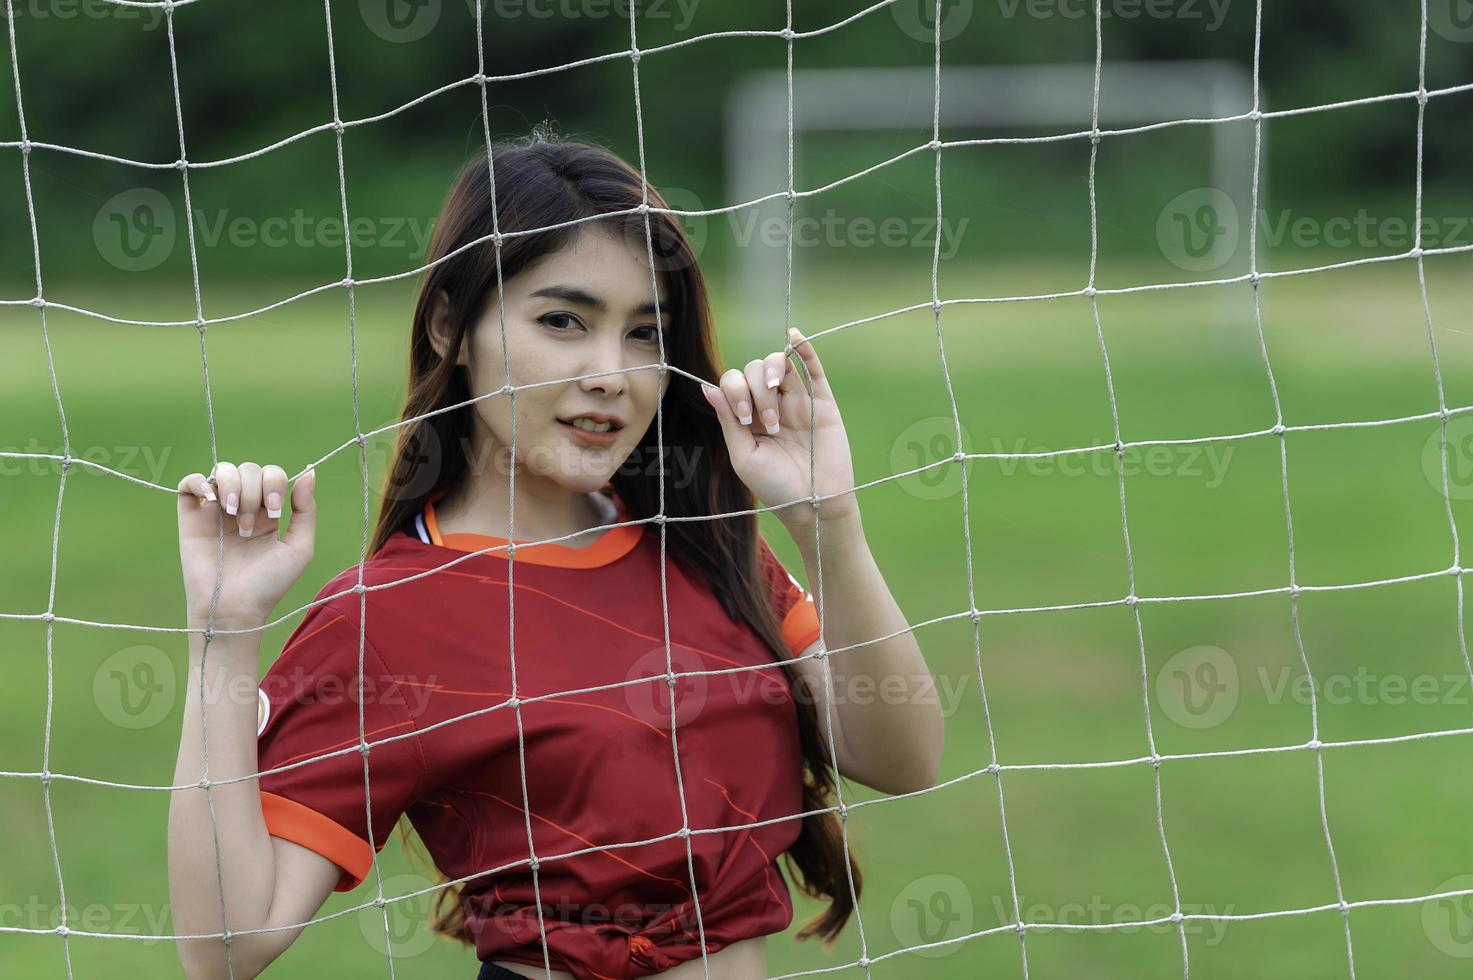 joven y hermosa mujer asiática viste a un jugador de fútbol animando el deporte, las hinchas femeninas animan el juego de fútbol foto